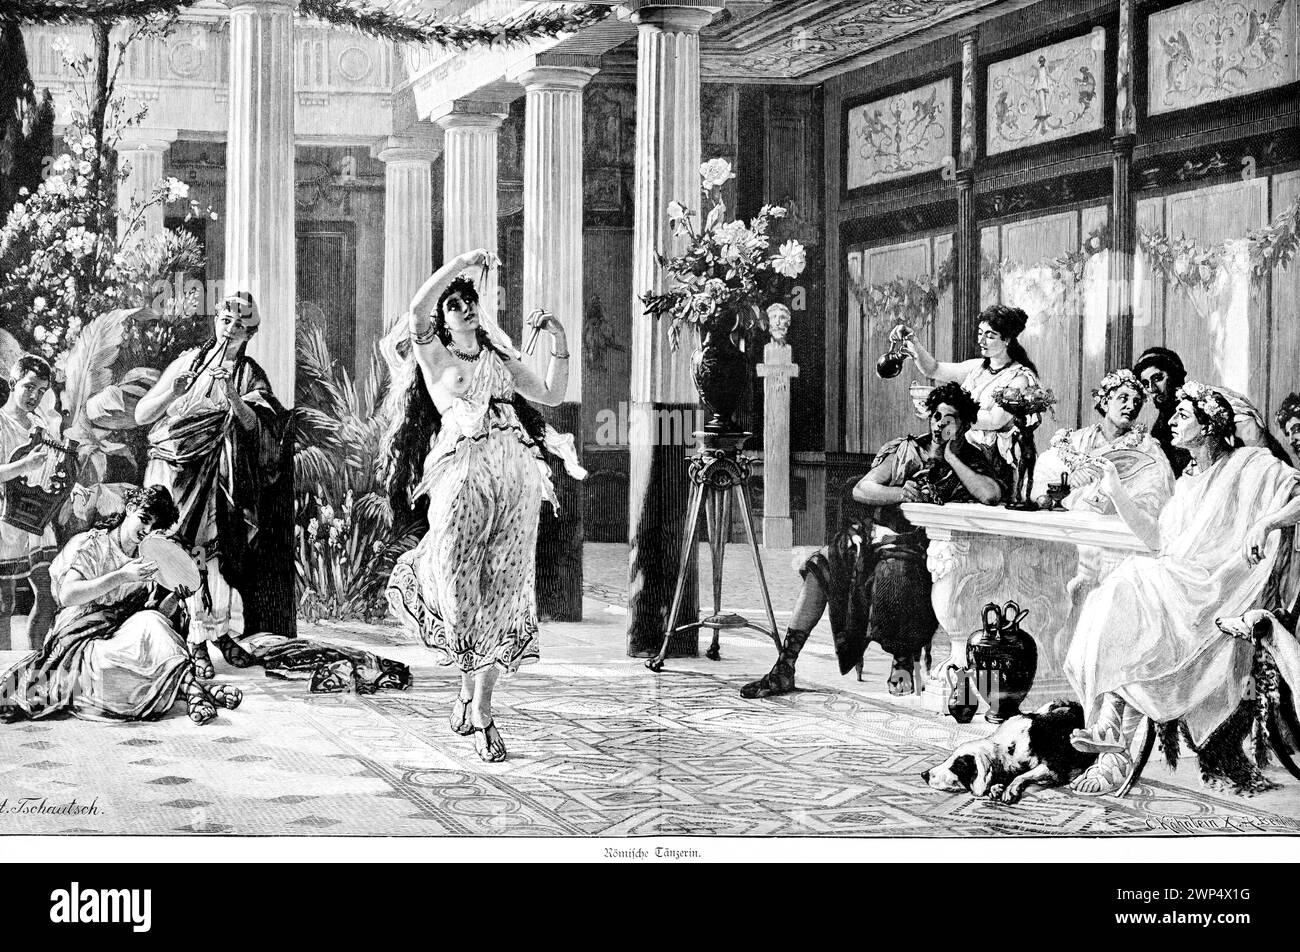 Danseuse romaine, Rome, musique, performance, intérieur, palais, richesse, Italie, illustration historique vers 1898 Banque D'Images